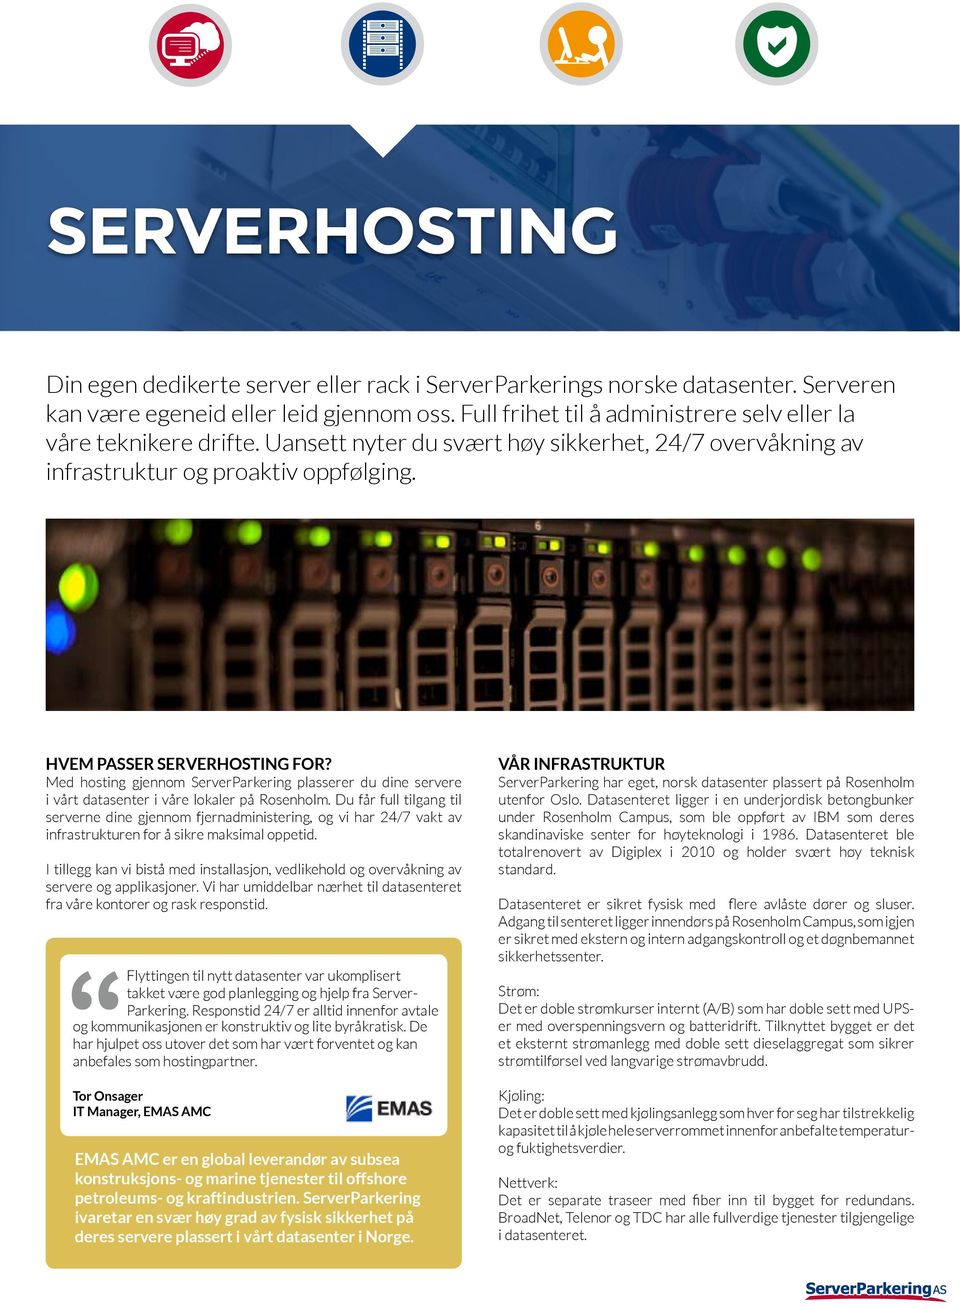 Med hosting gjennom ServerParkering plasserer du dine servere i vårt datasenter i våre lokaler på Rosenholm.